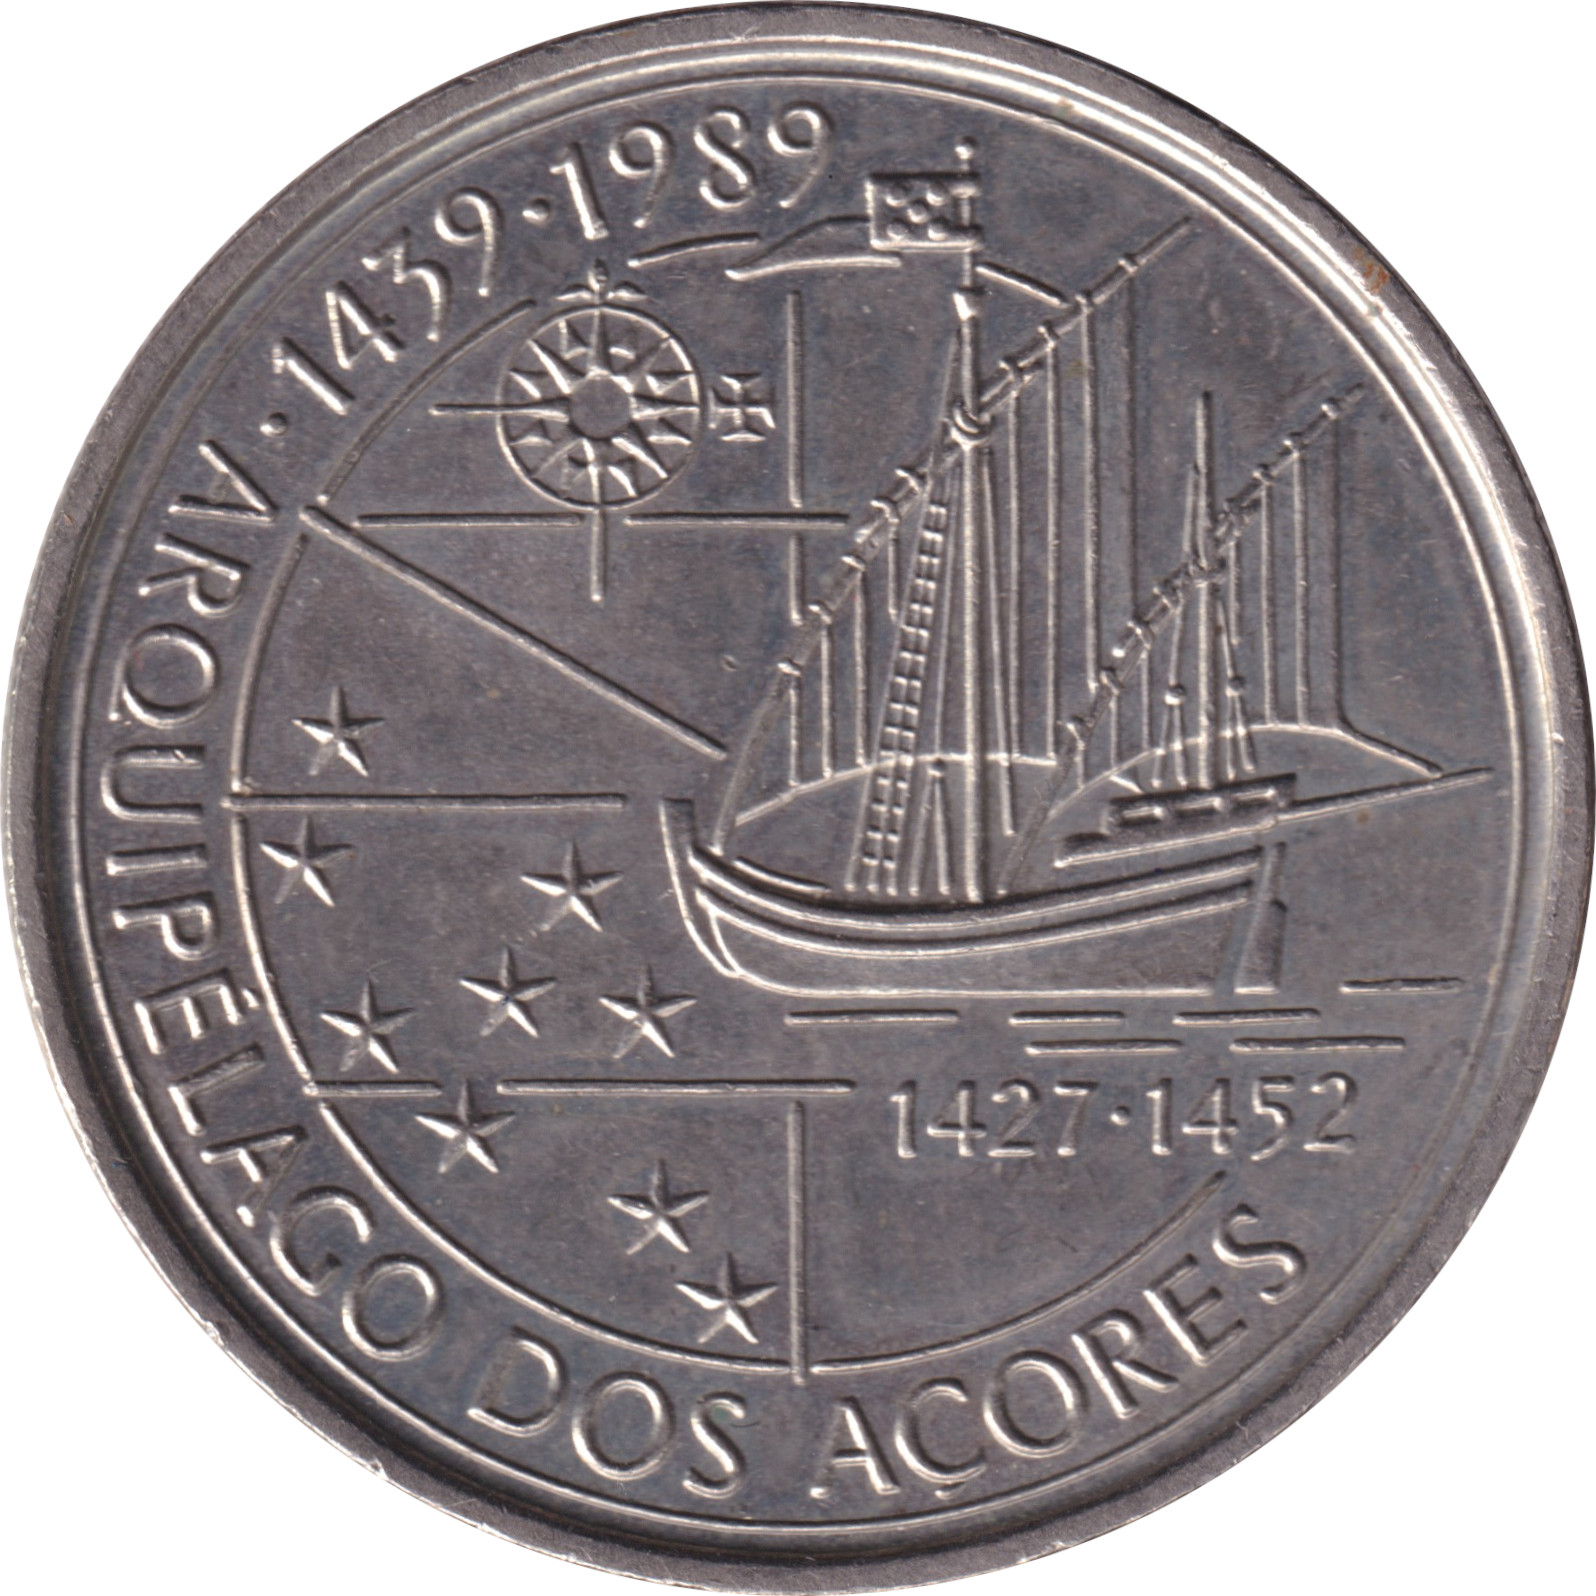 100 escudos - Découverte des Açores